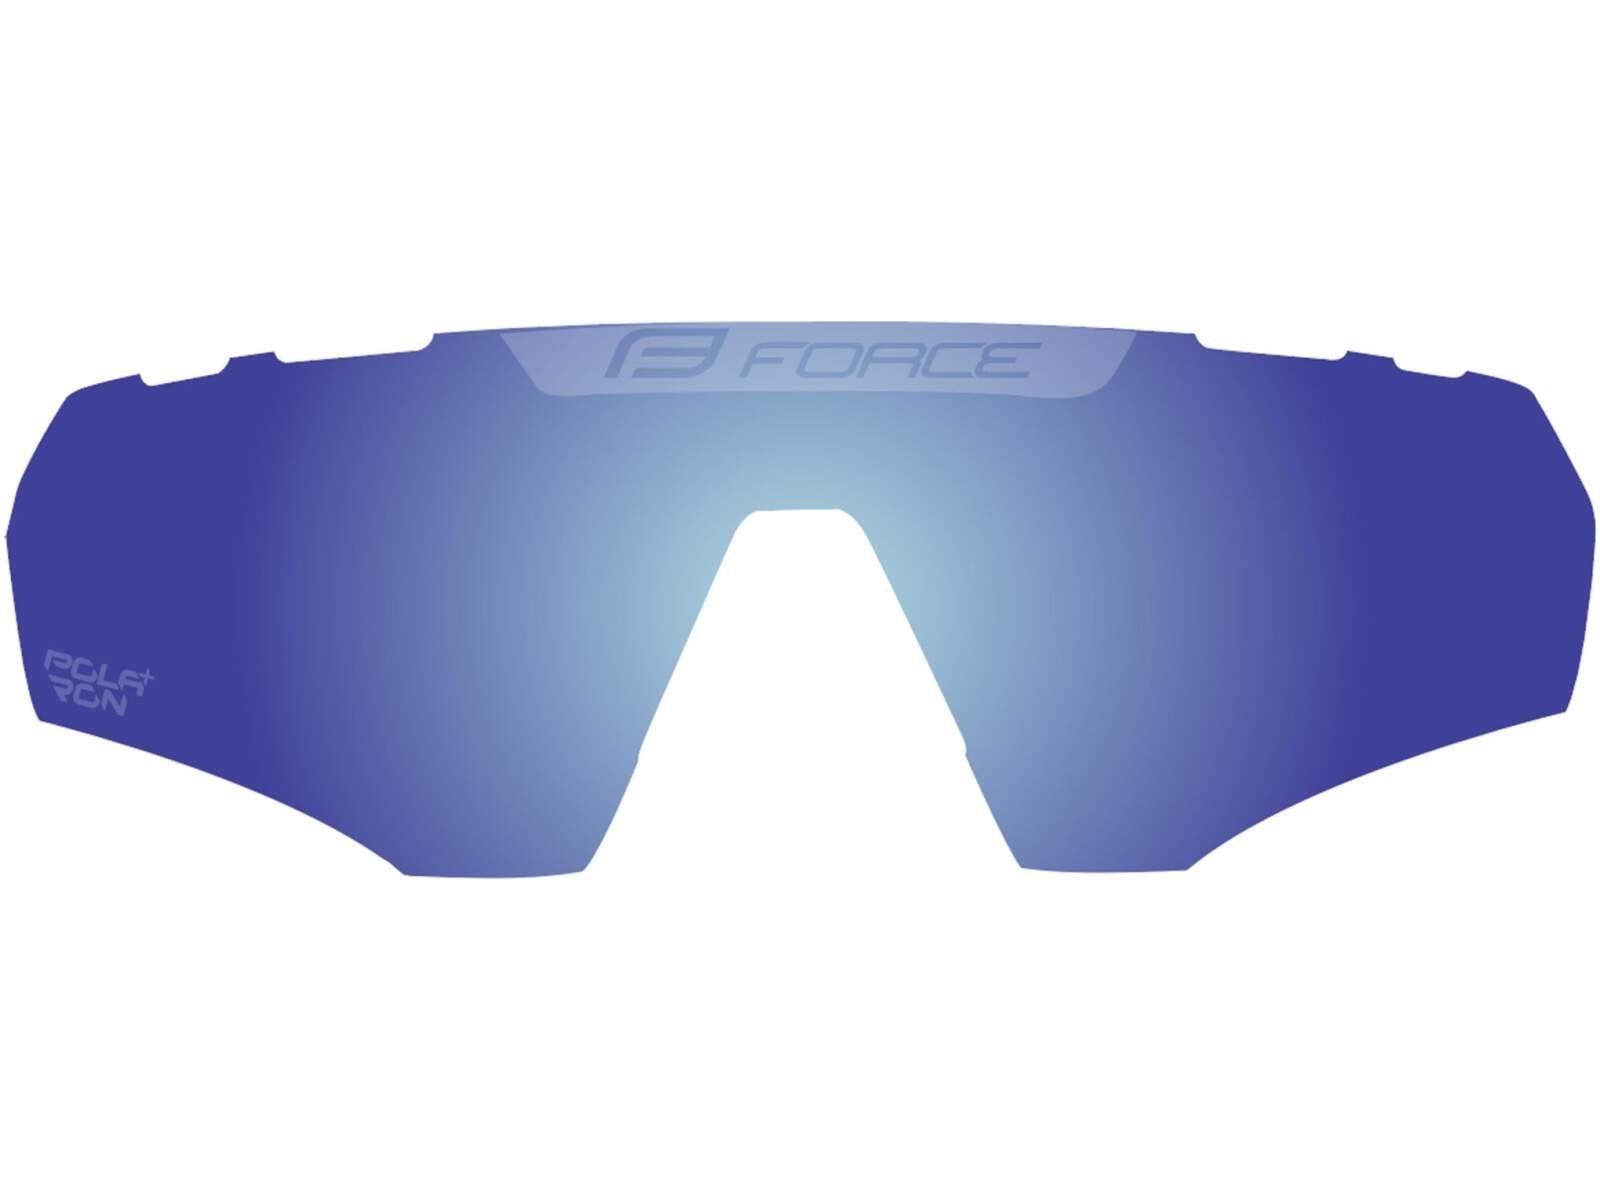 Szkła zapasowe do okularów Force ENIGMA niebieskie polaryzacyjne